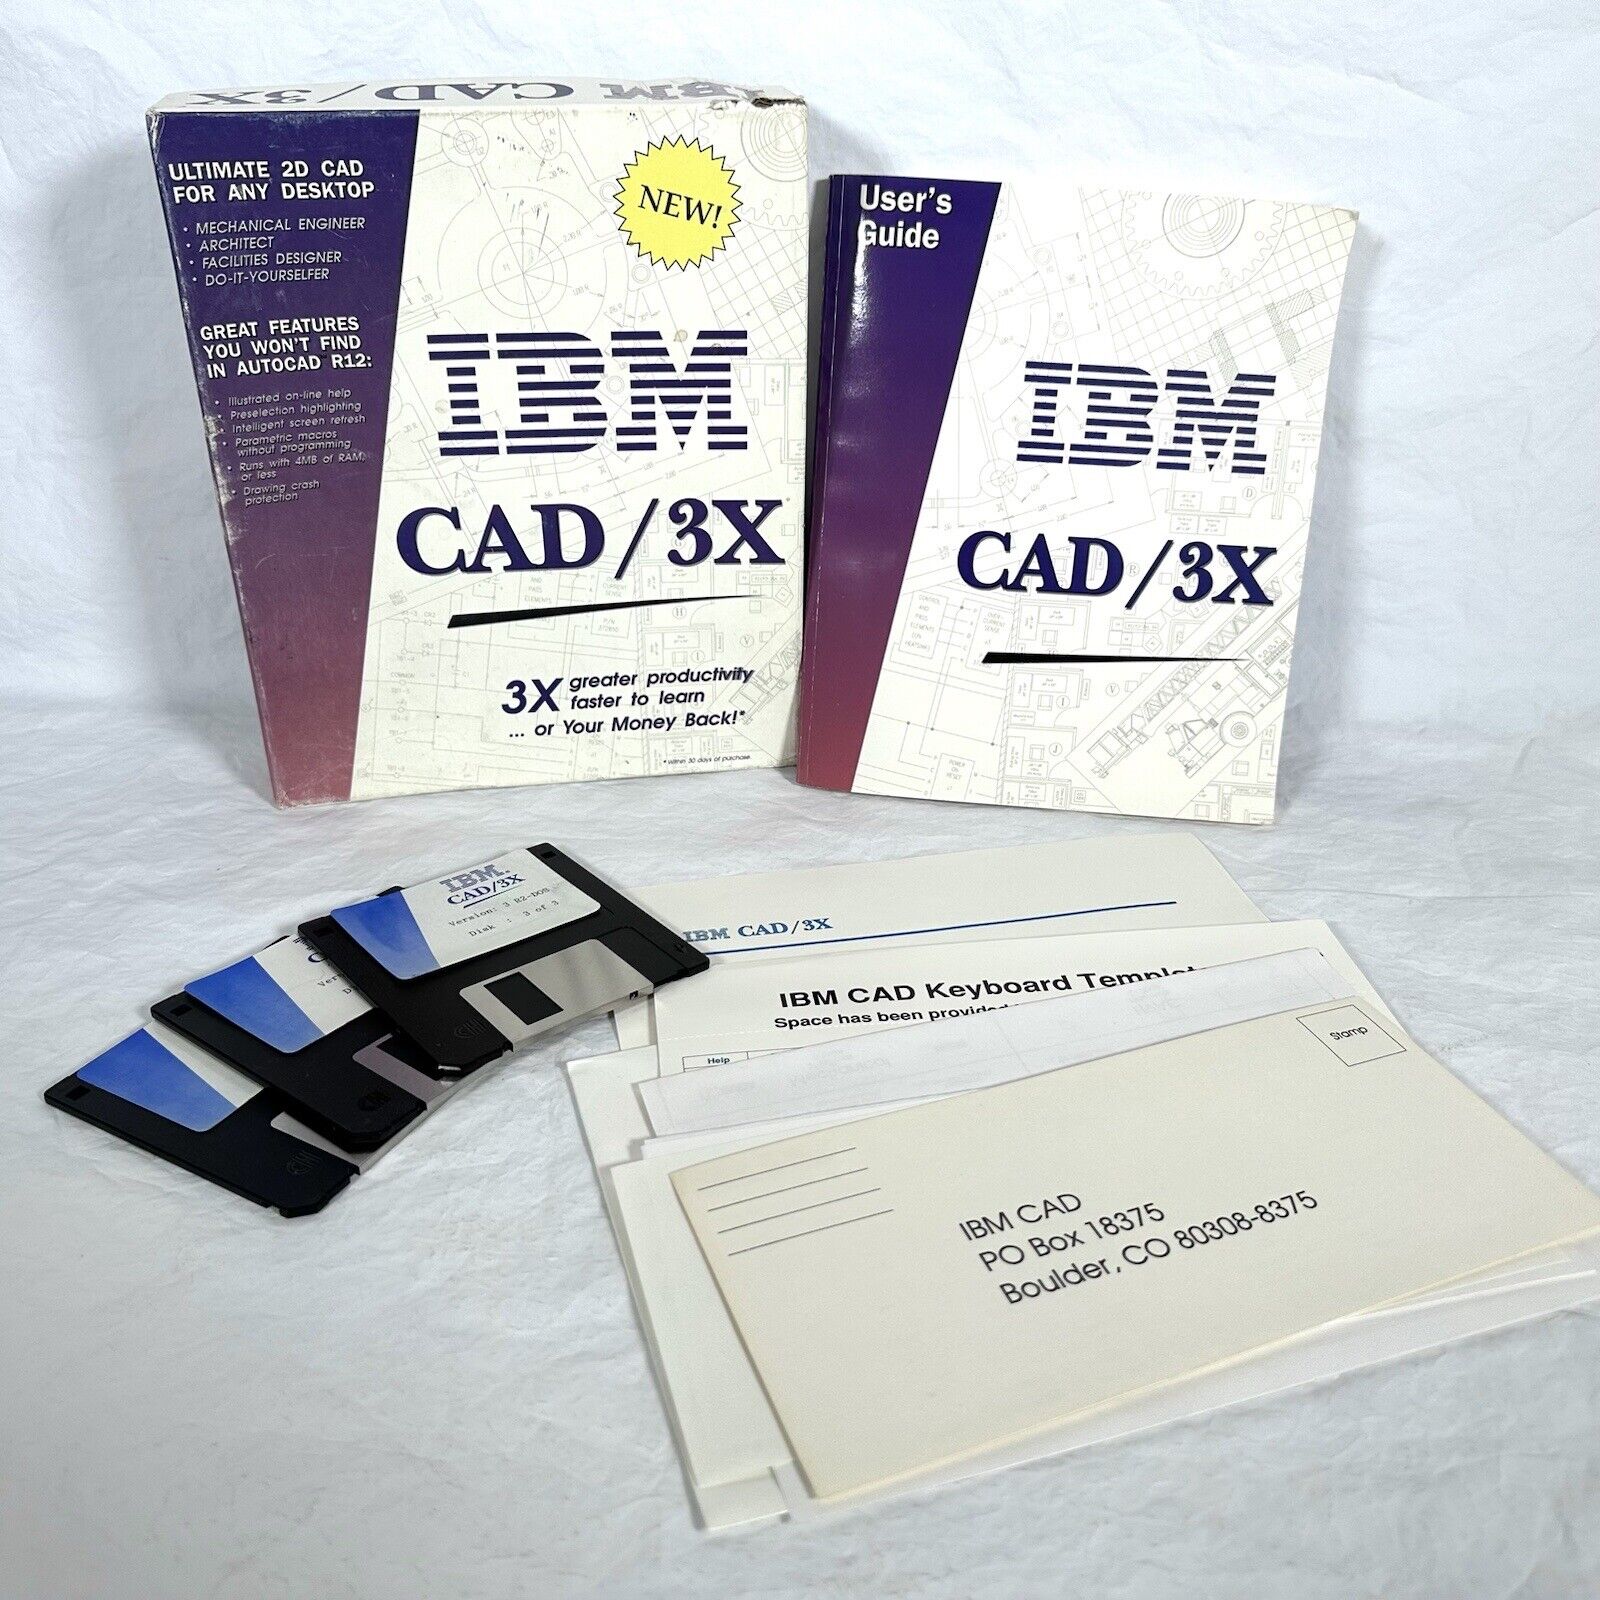 IBM Vintage Software Desktop W/ Box & User Guide Cad / 3X Ultimate 2D CAD